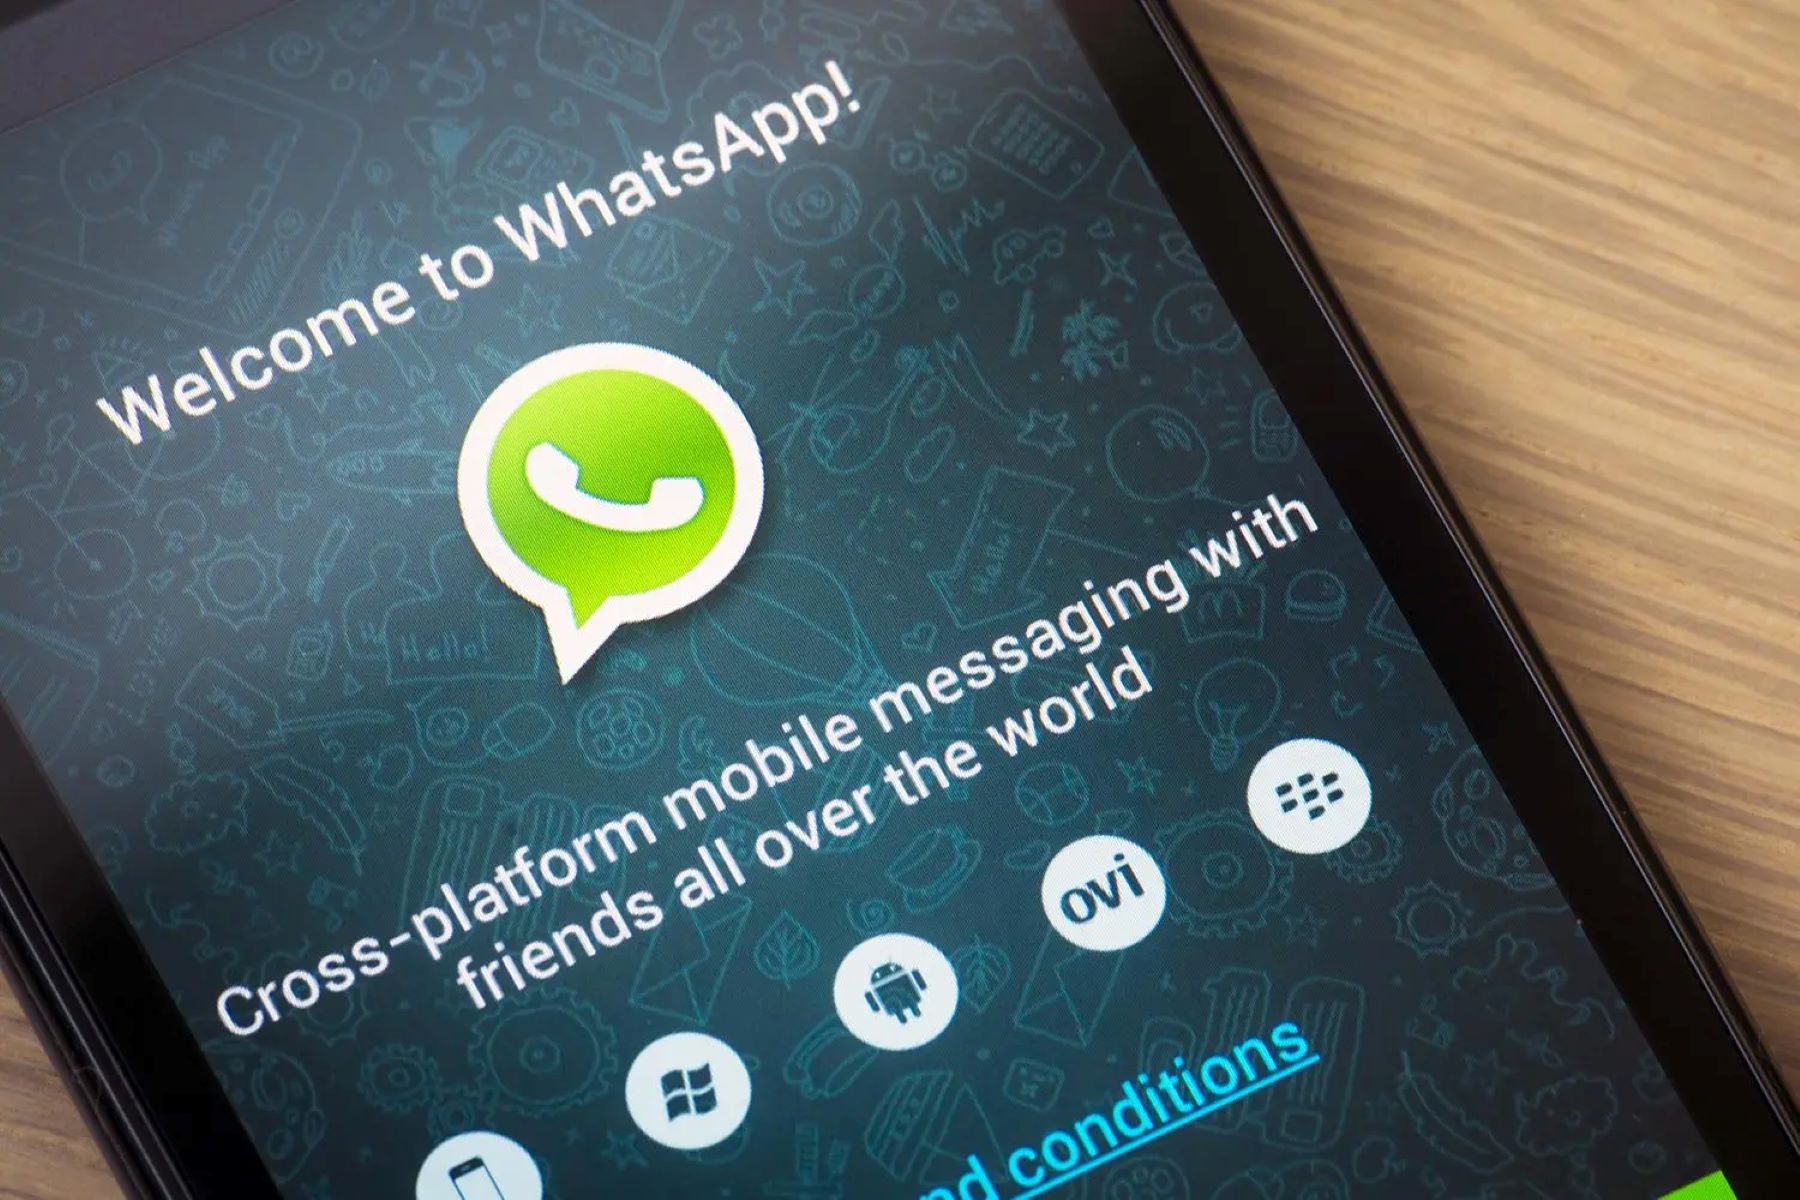 WhatsApp Installation On Xperia Mini: A Quick Tutorial